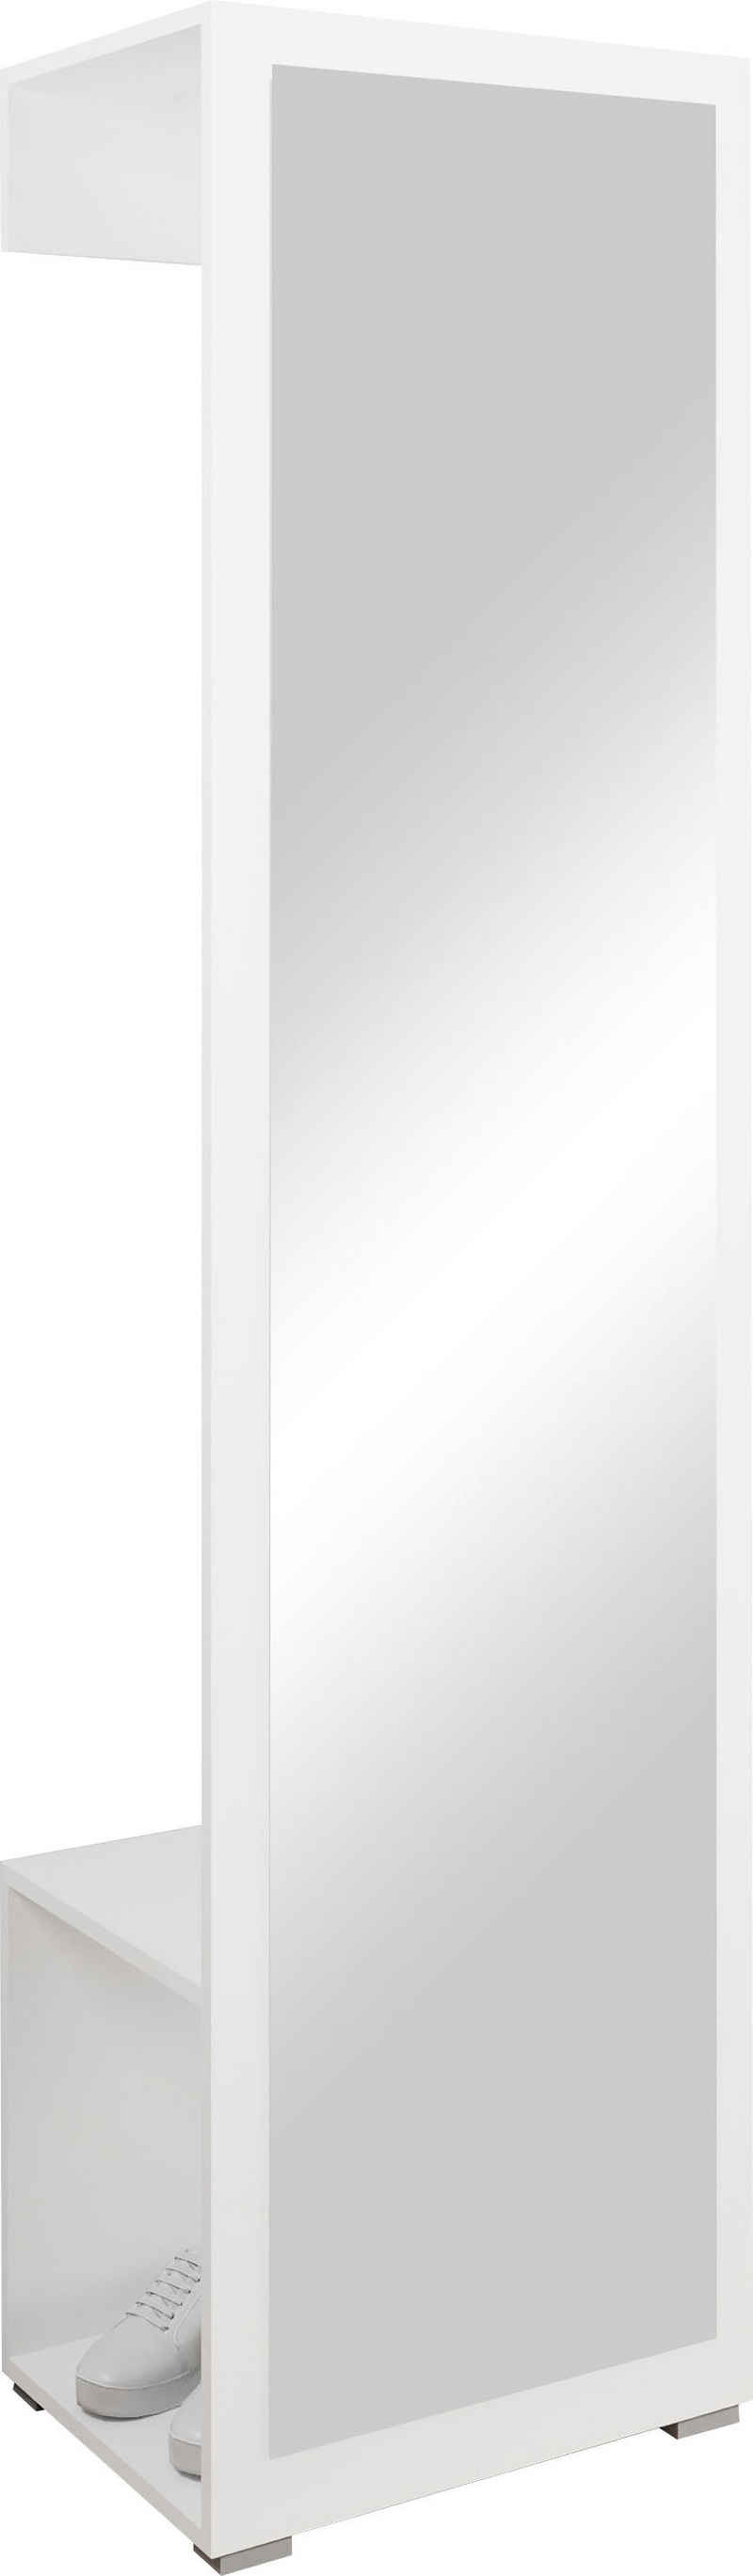 INOSIGN Garderobenschrank Paris mit 1 Kleiderstange und 1 Frontspiegel (Höhe 190 cm)